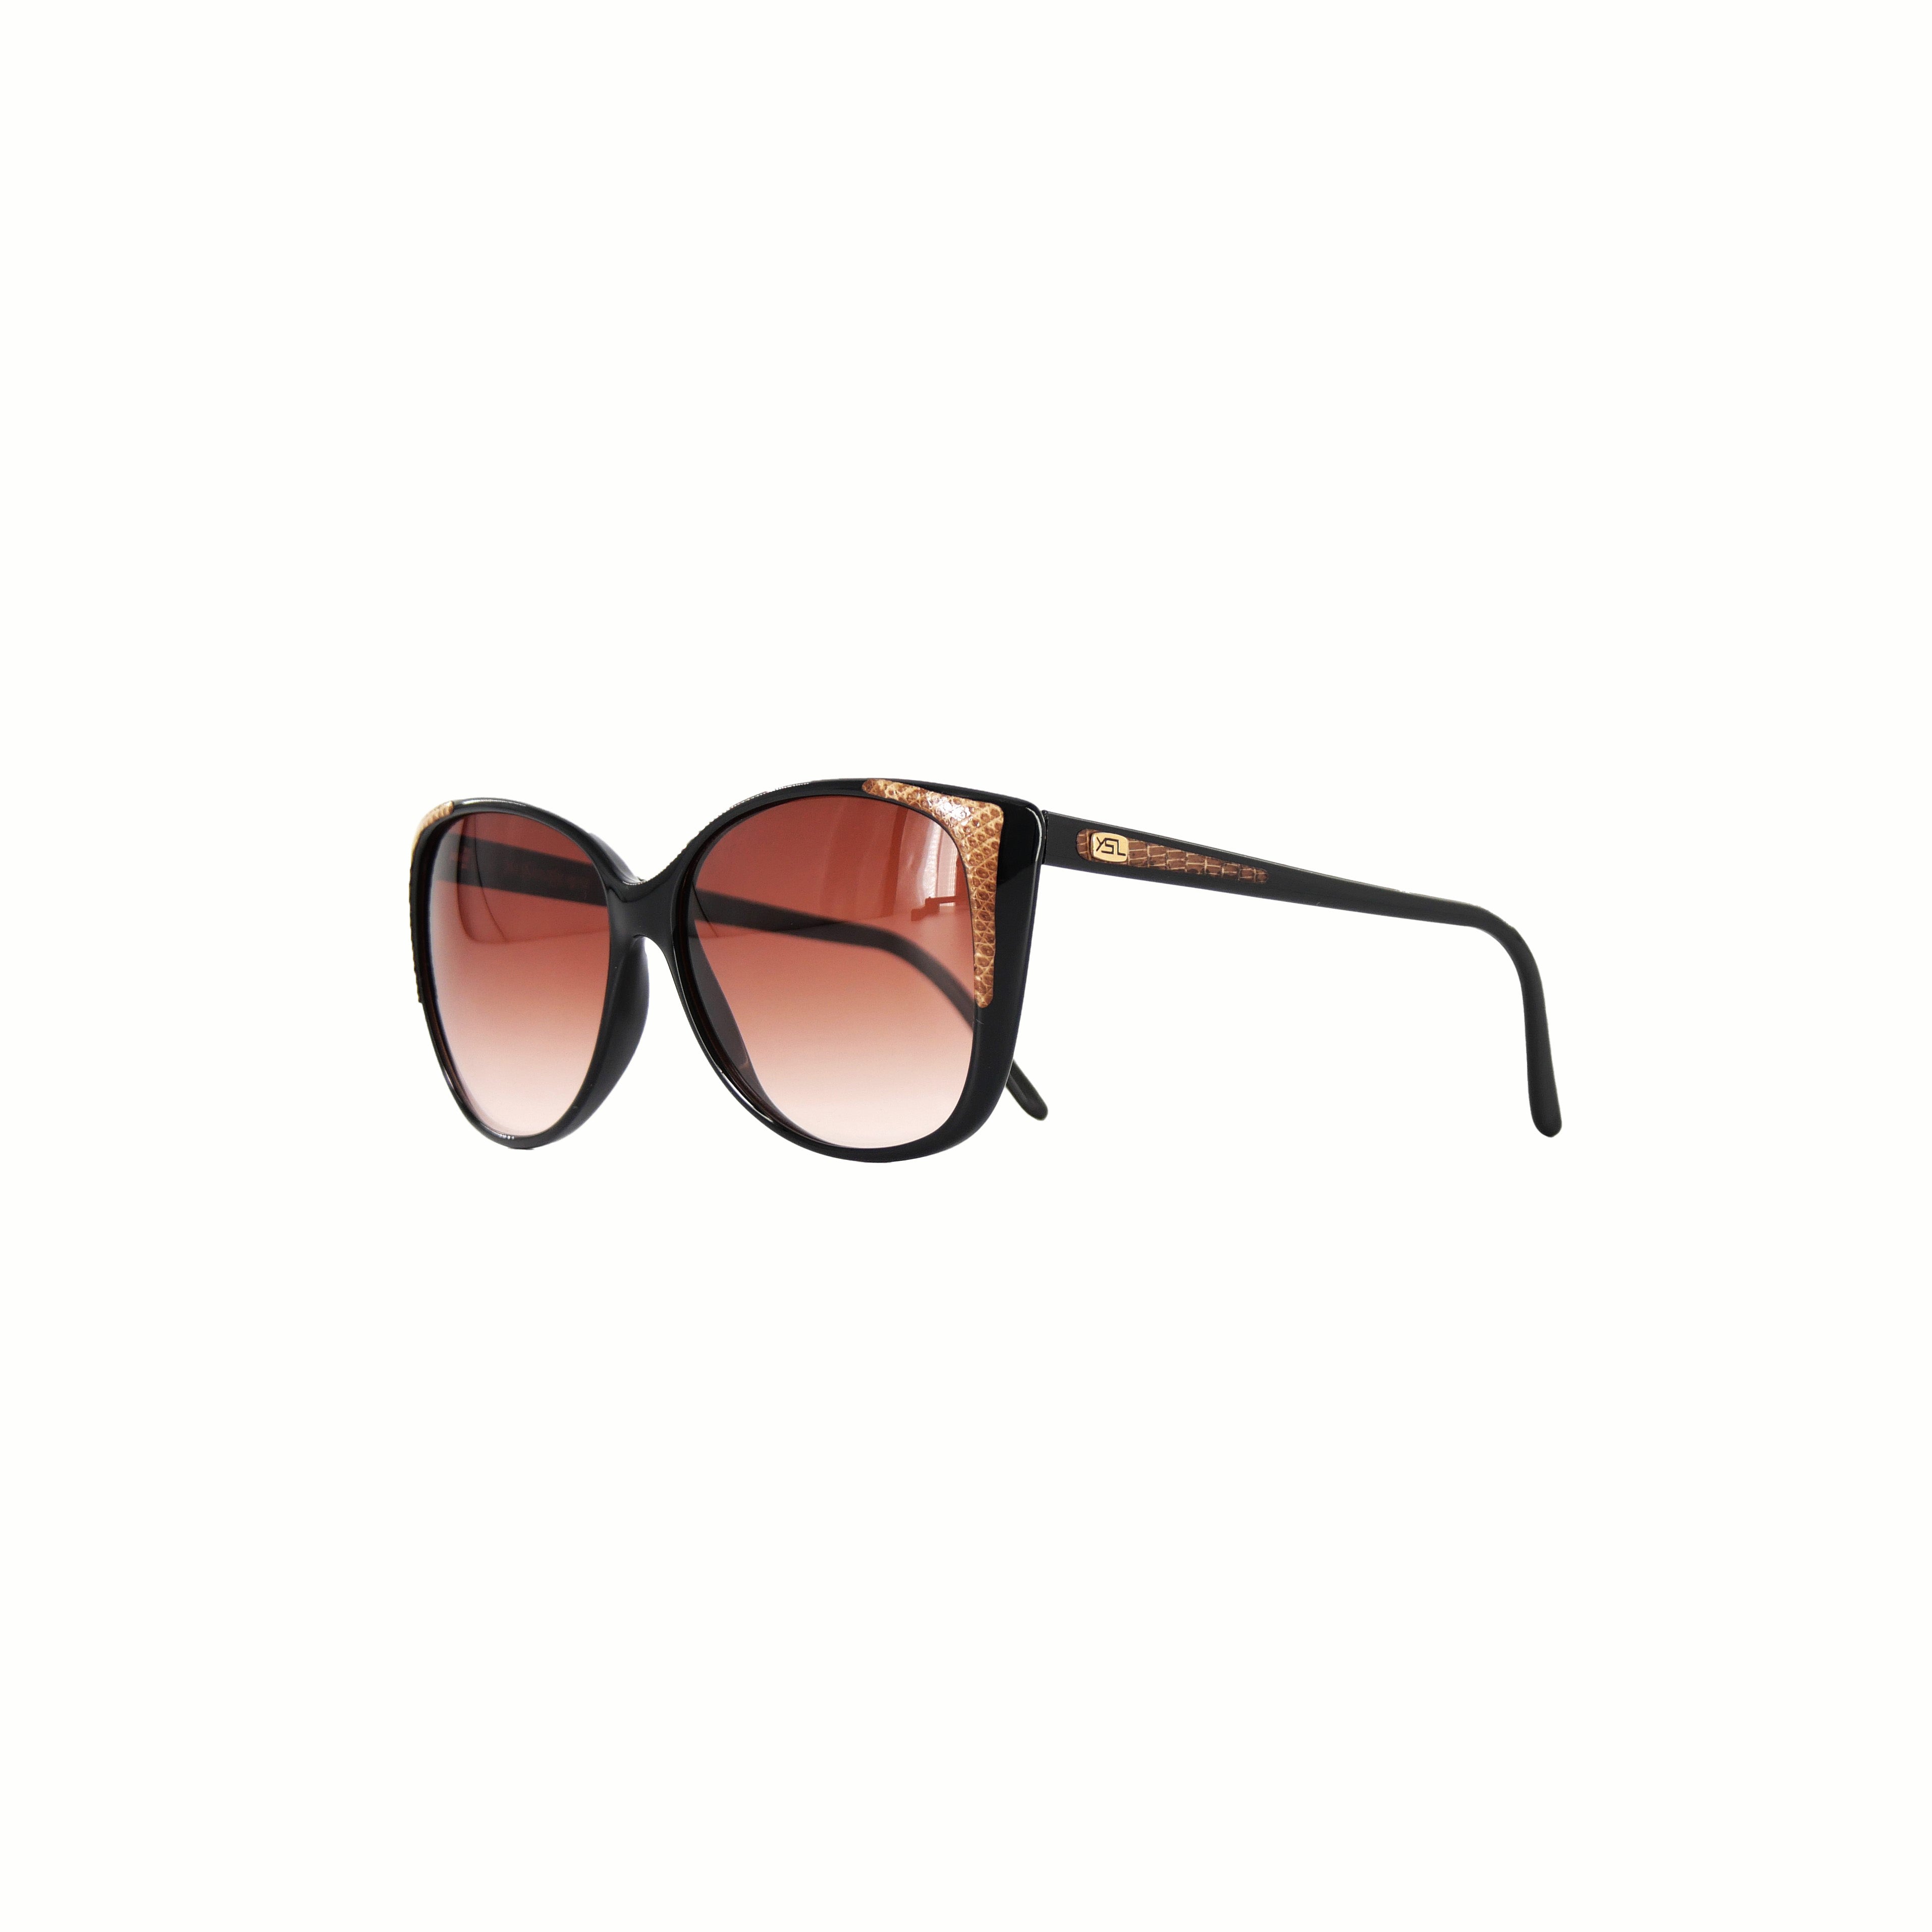 Retro Sun[レトロ サン] / Yve Saint Laurent Sunglasses② [イブ サン ローラン サングラス]